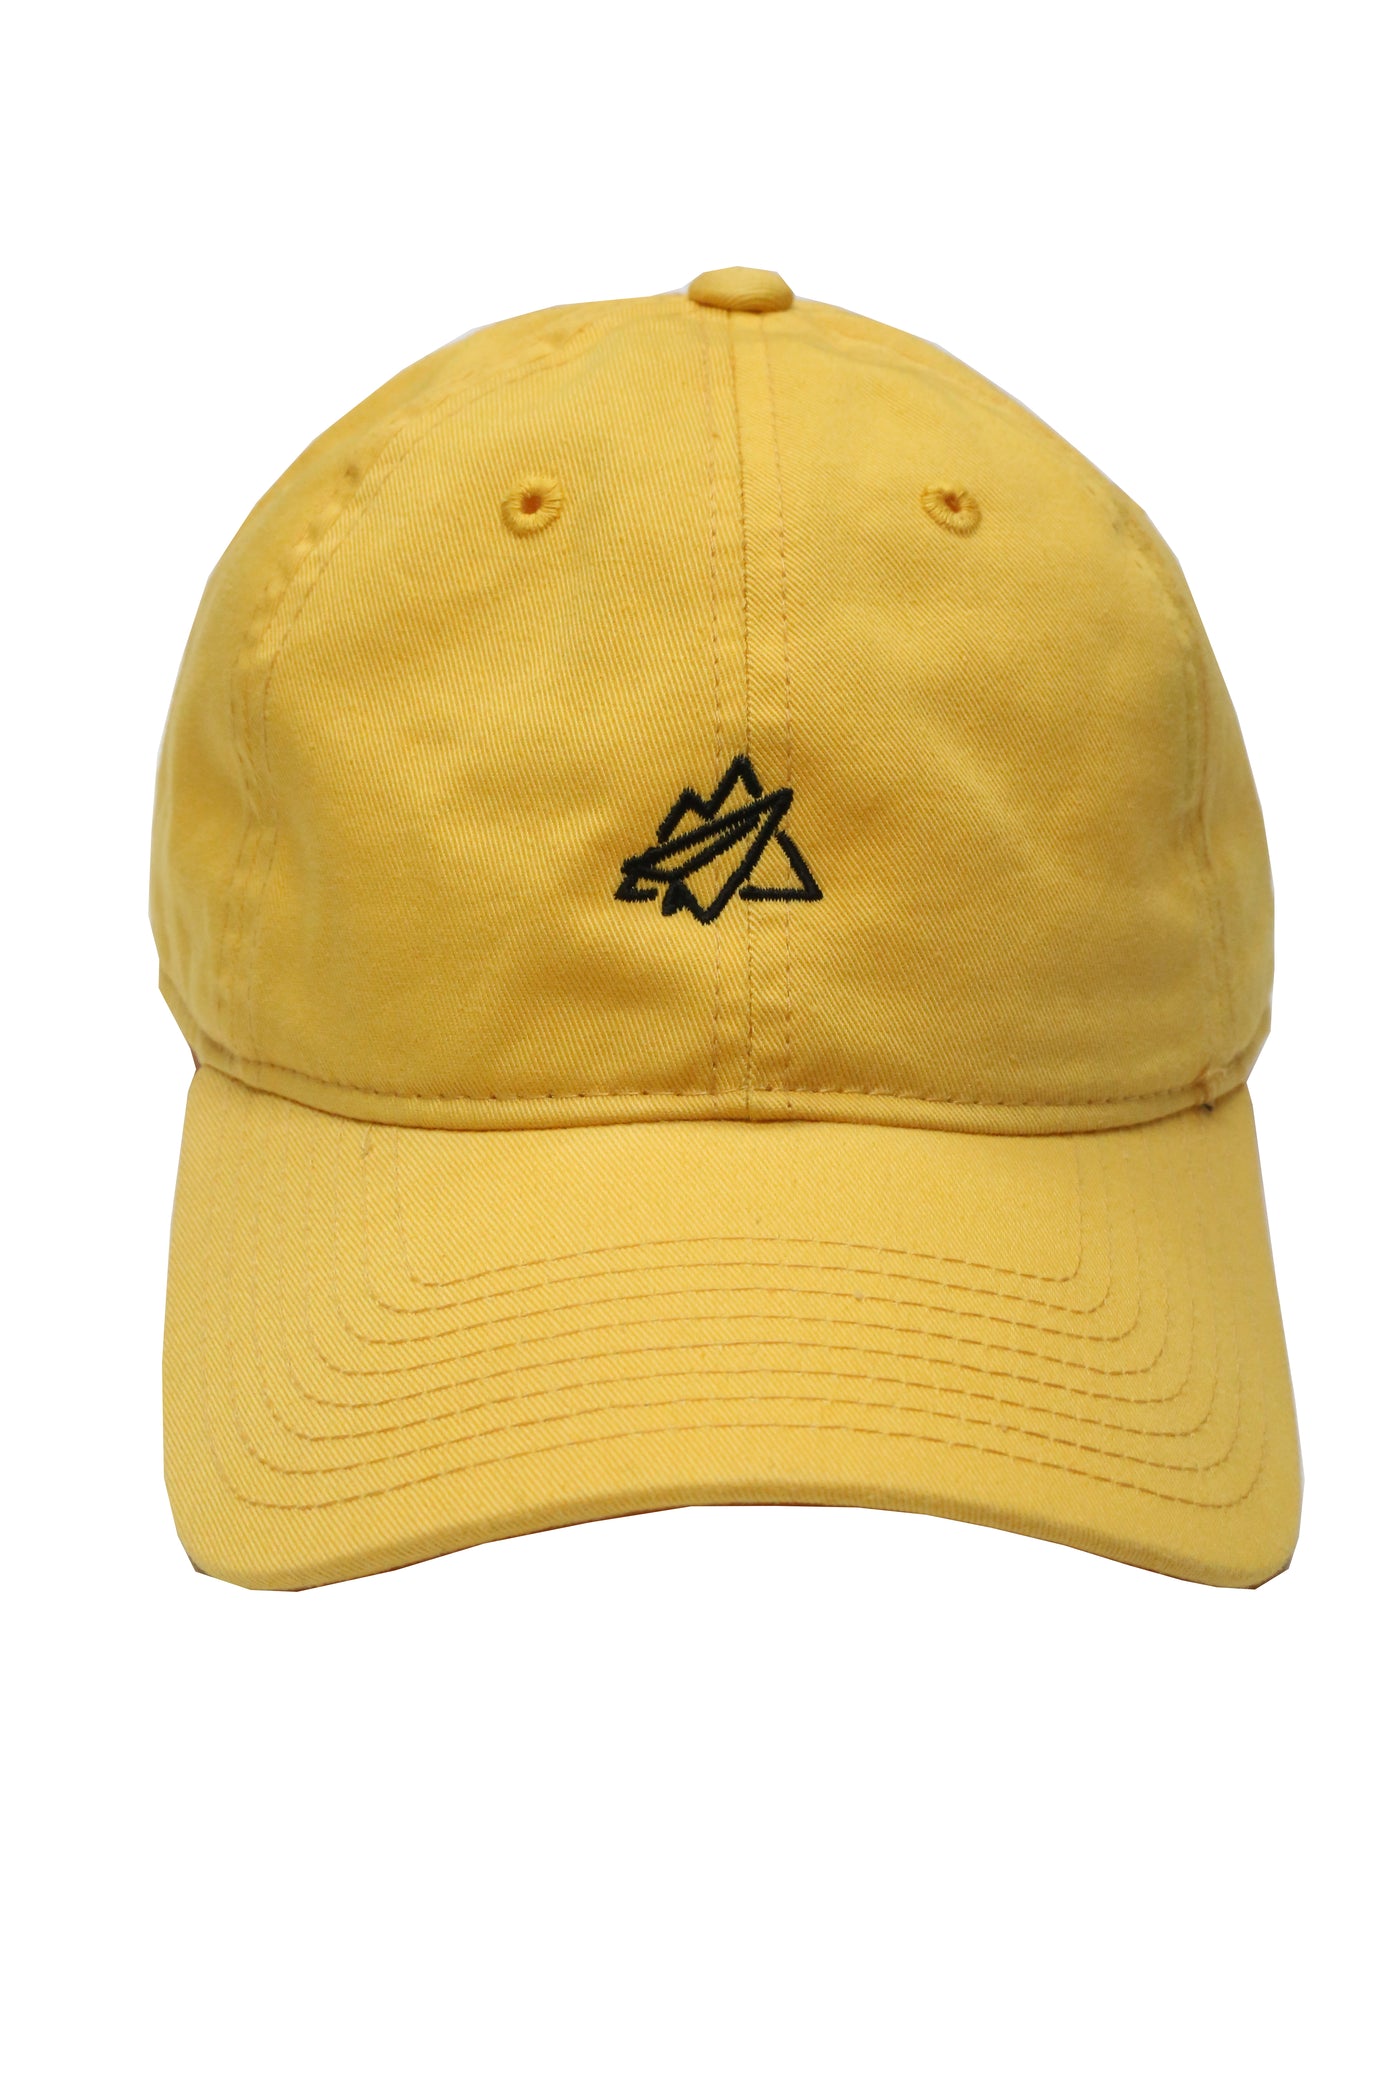 The Traveler Hat - Yellow